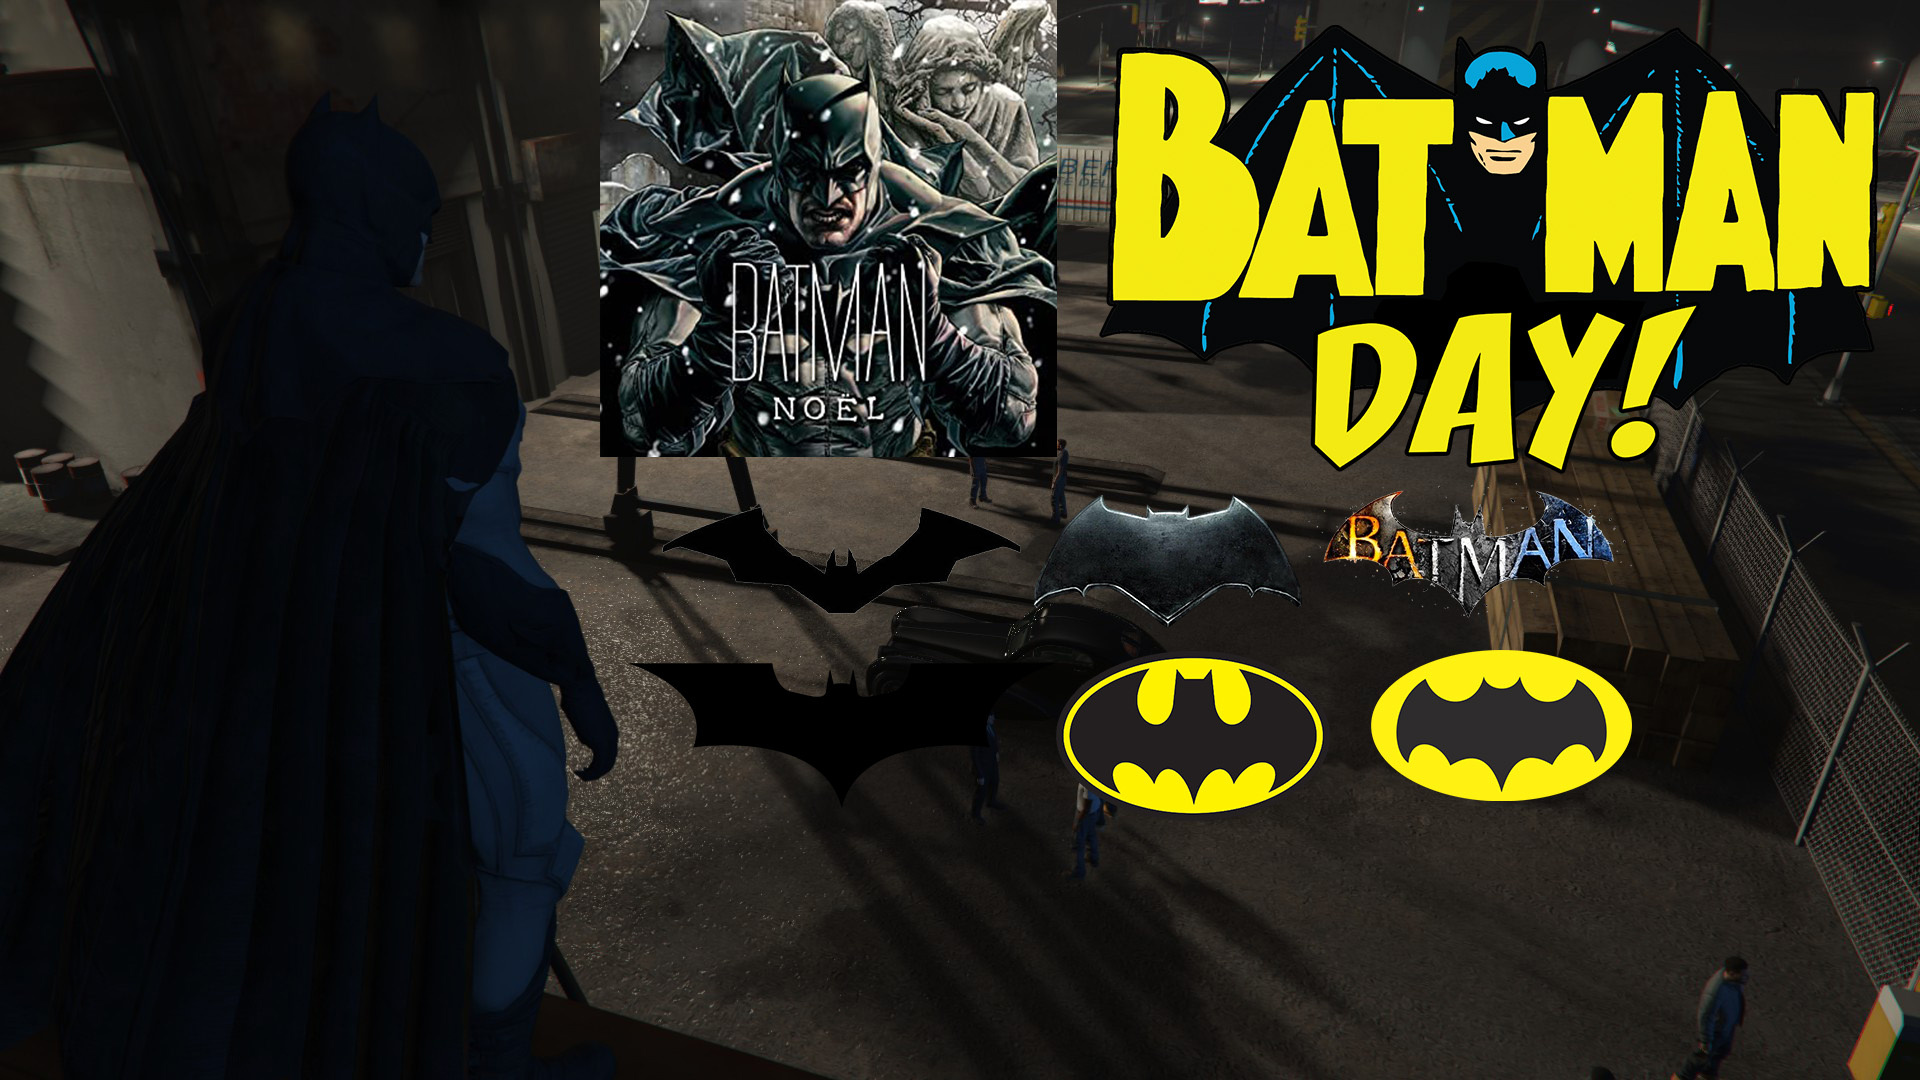 Batman Noel W/Cloth Happy Batman Day!!!BruceWanyeInclode [Add-On Ped]. -  